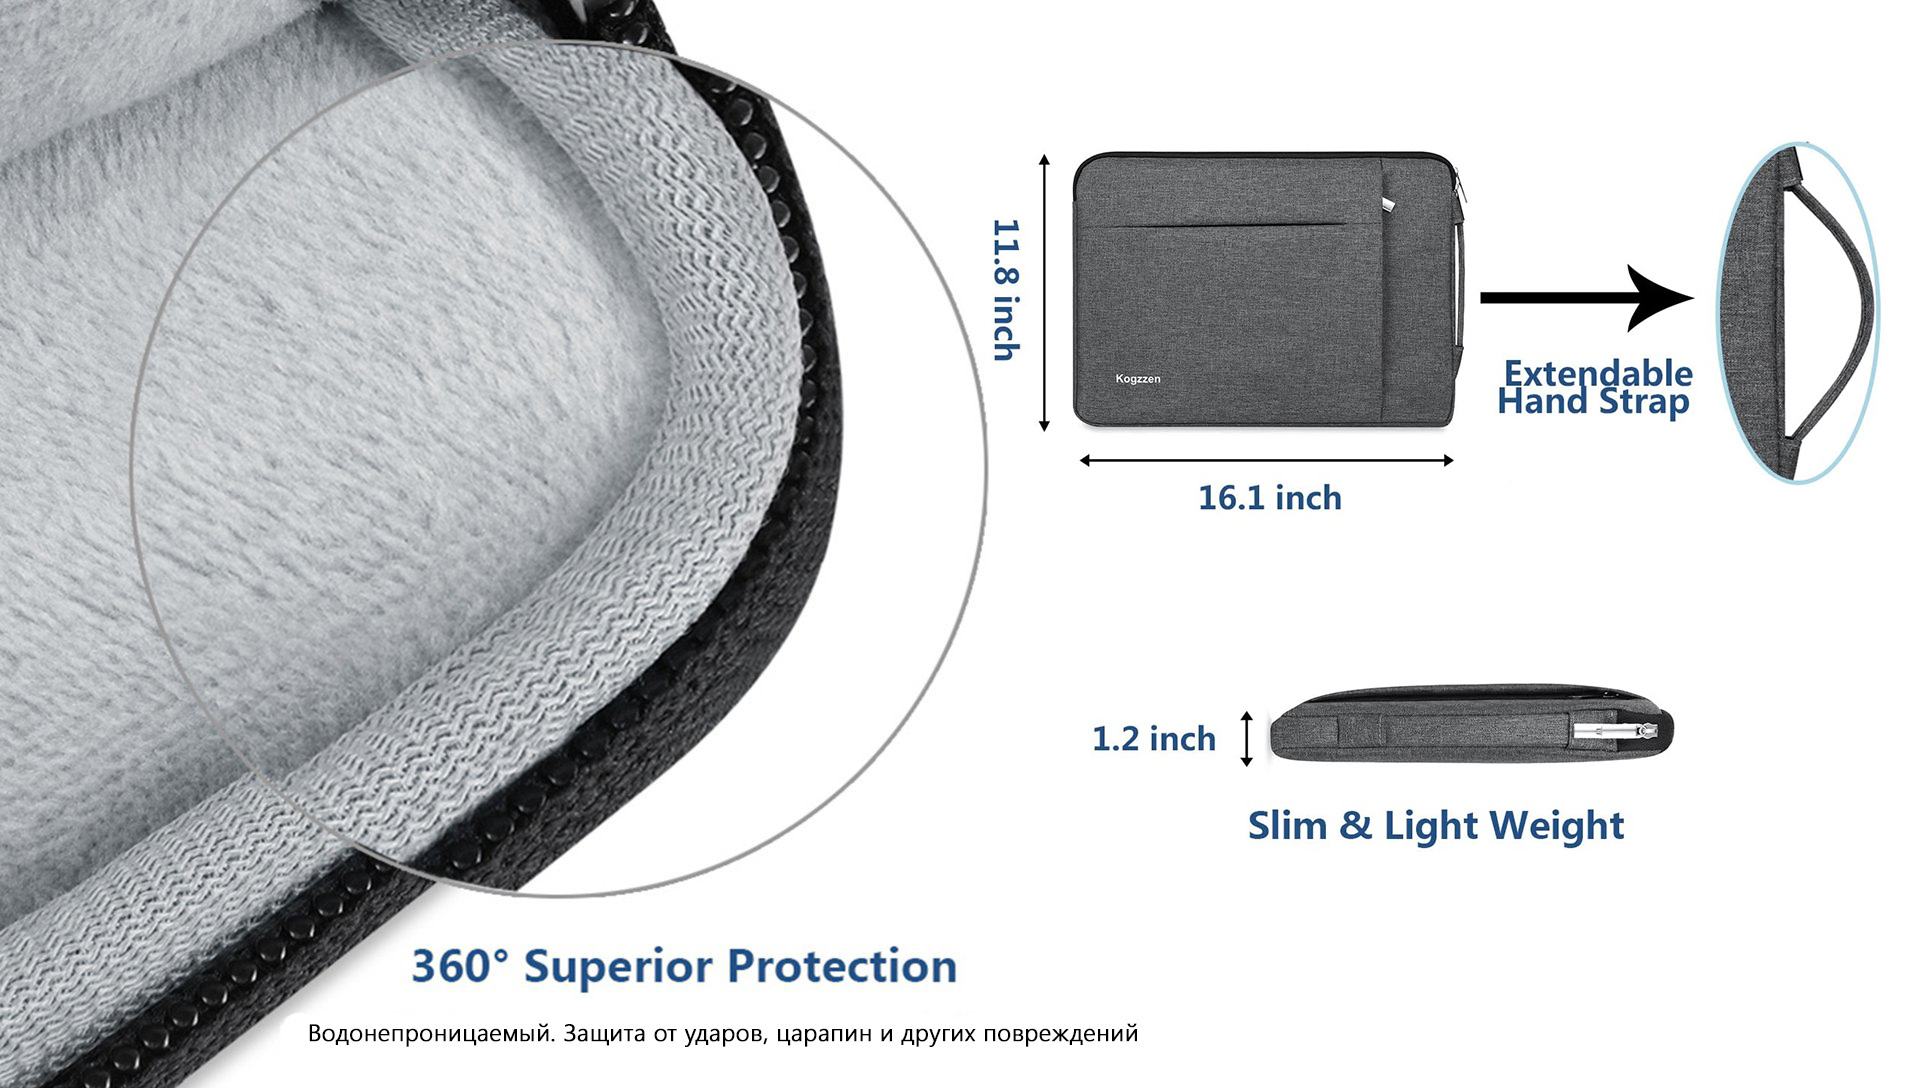 Ударопрочная и легкая сумка-чехол с водонепроницаемым покрытием предназначен для защиты ноутбука 360°